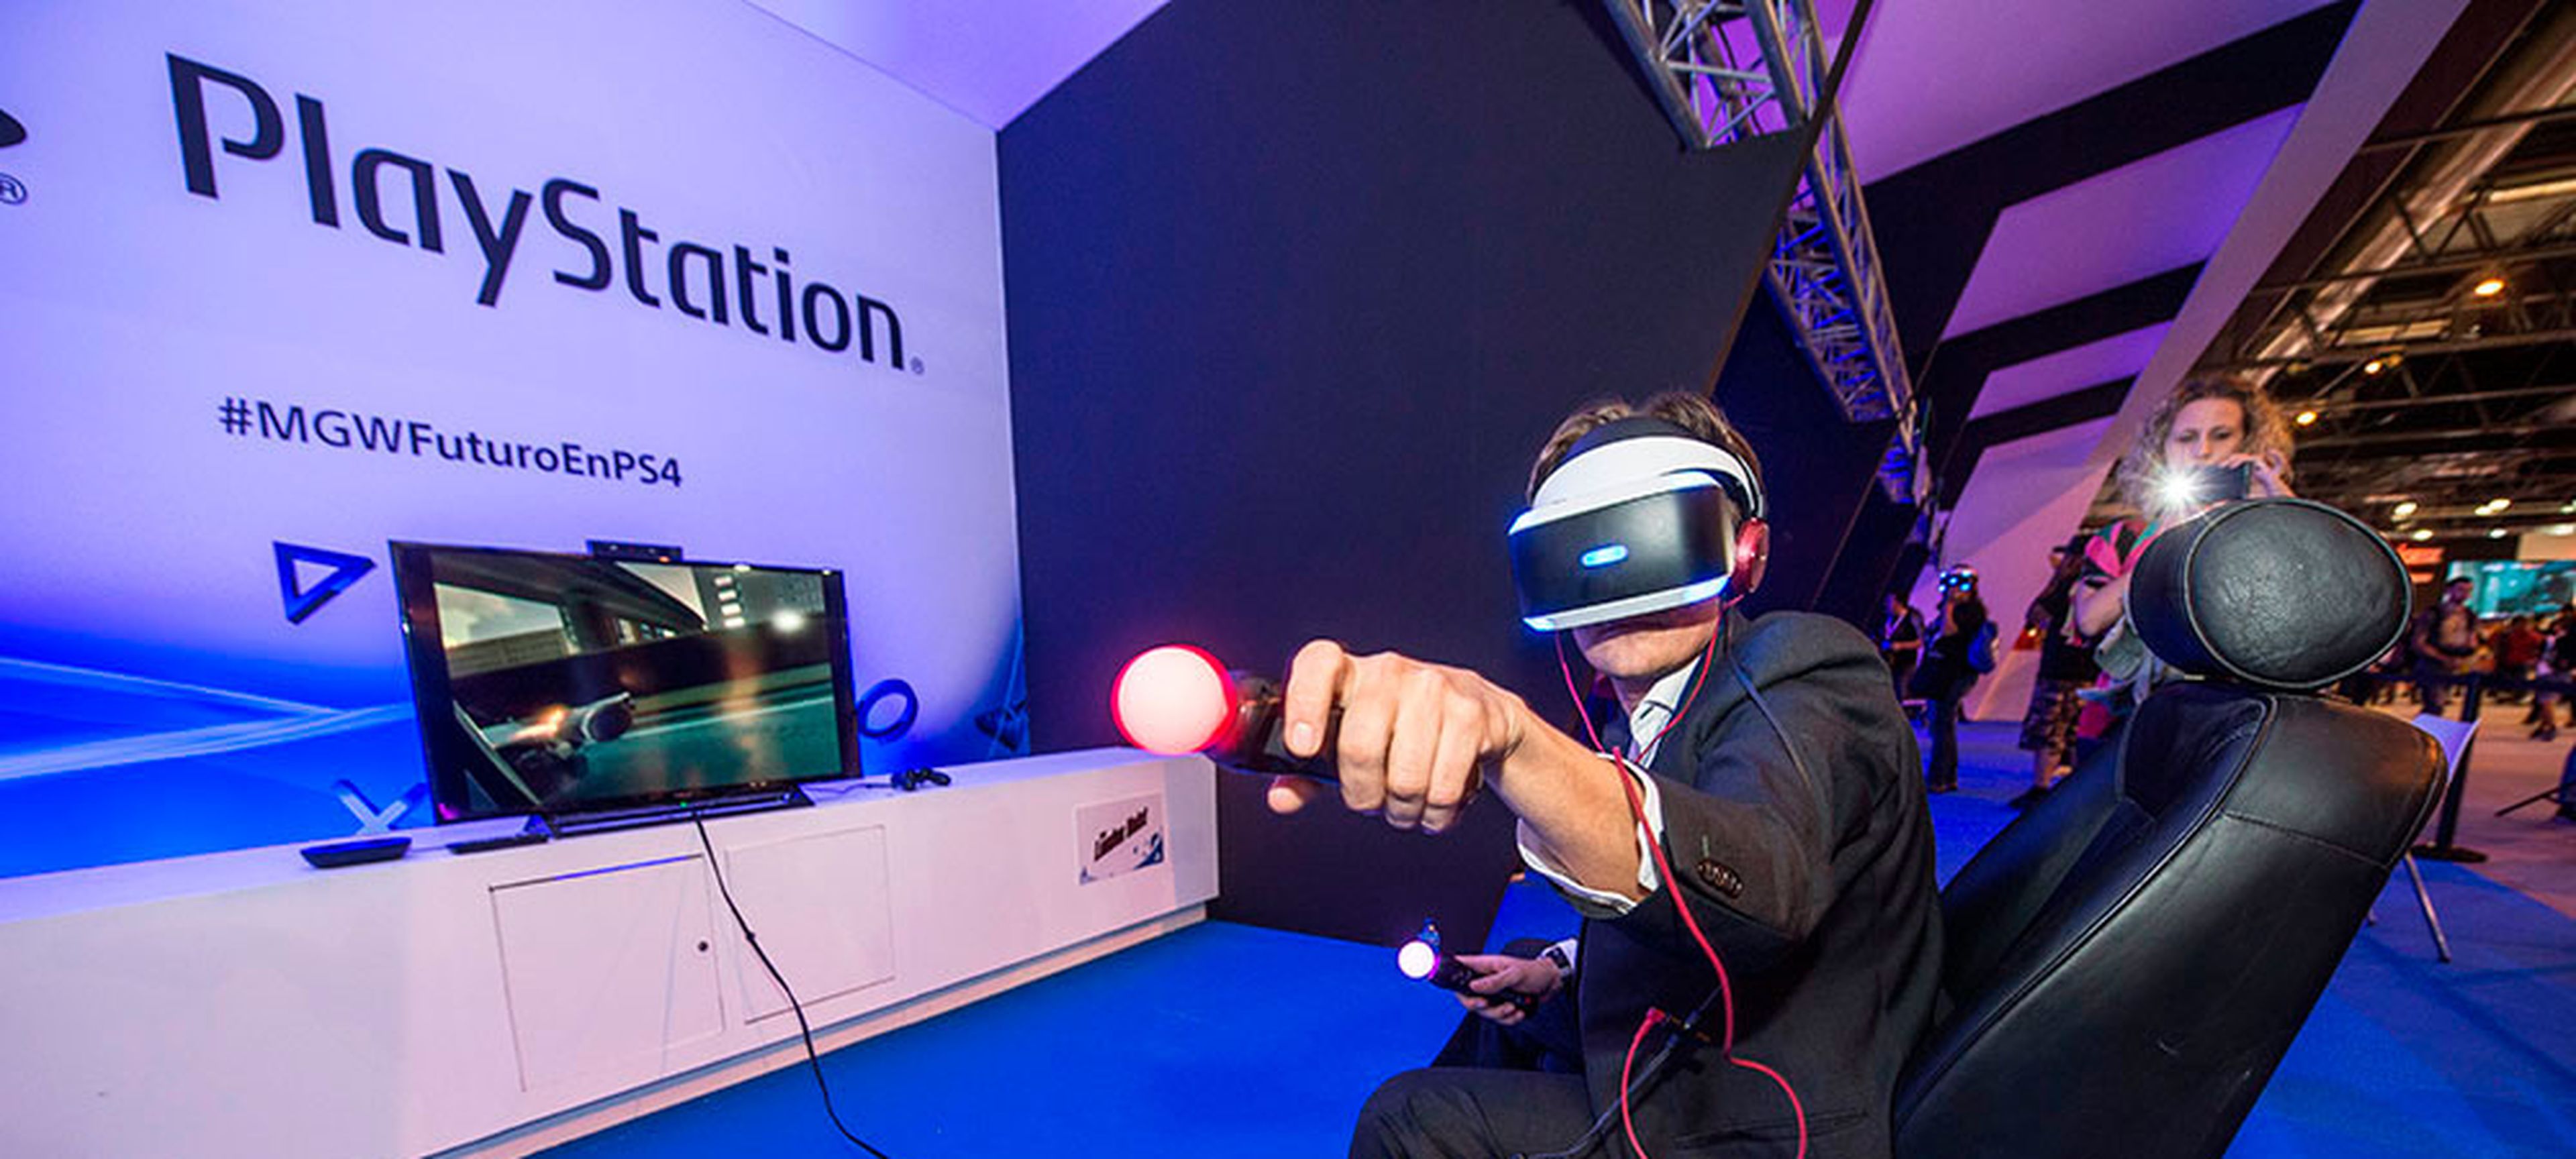 PlayStation VR fue una de las sensaciones del stand de PlayStation